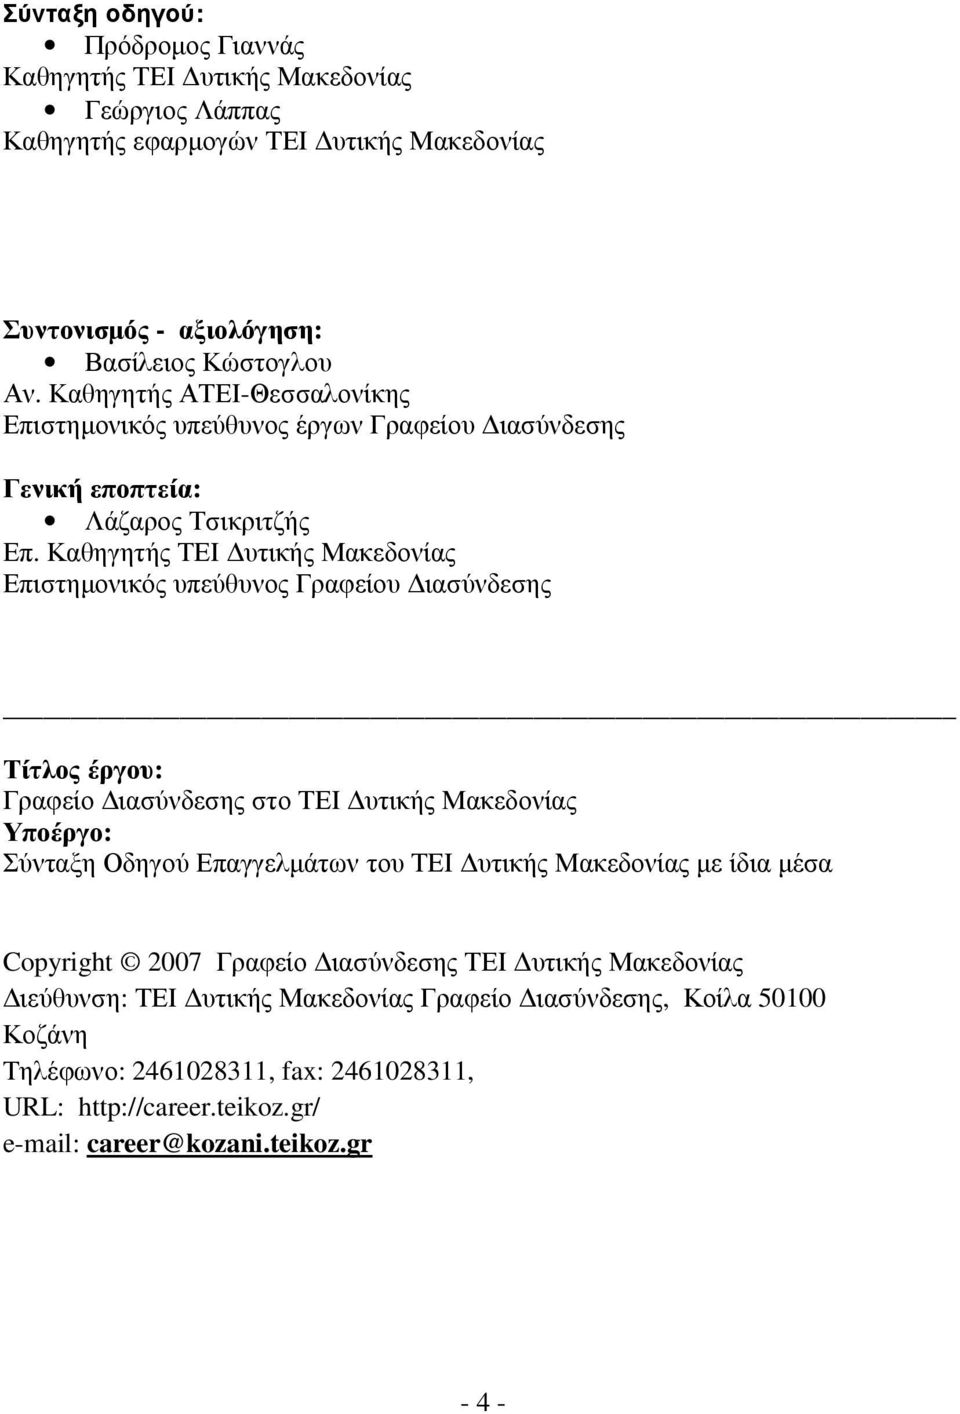 Καθηγητής ΤΕΙ υτικής Μακεδονίας Επιστηµονικός υπεύθυνος Γραφείου ιασύνδεσης Τίτλος έργου: Γραφείο ιασύνδεσης στο ΤΕΙ υτικής Μακεδονίας Υποέργο: Σύνταξη Οδηγού Επαγγελµάτων του ΤΕΙ